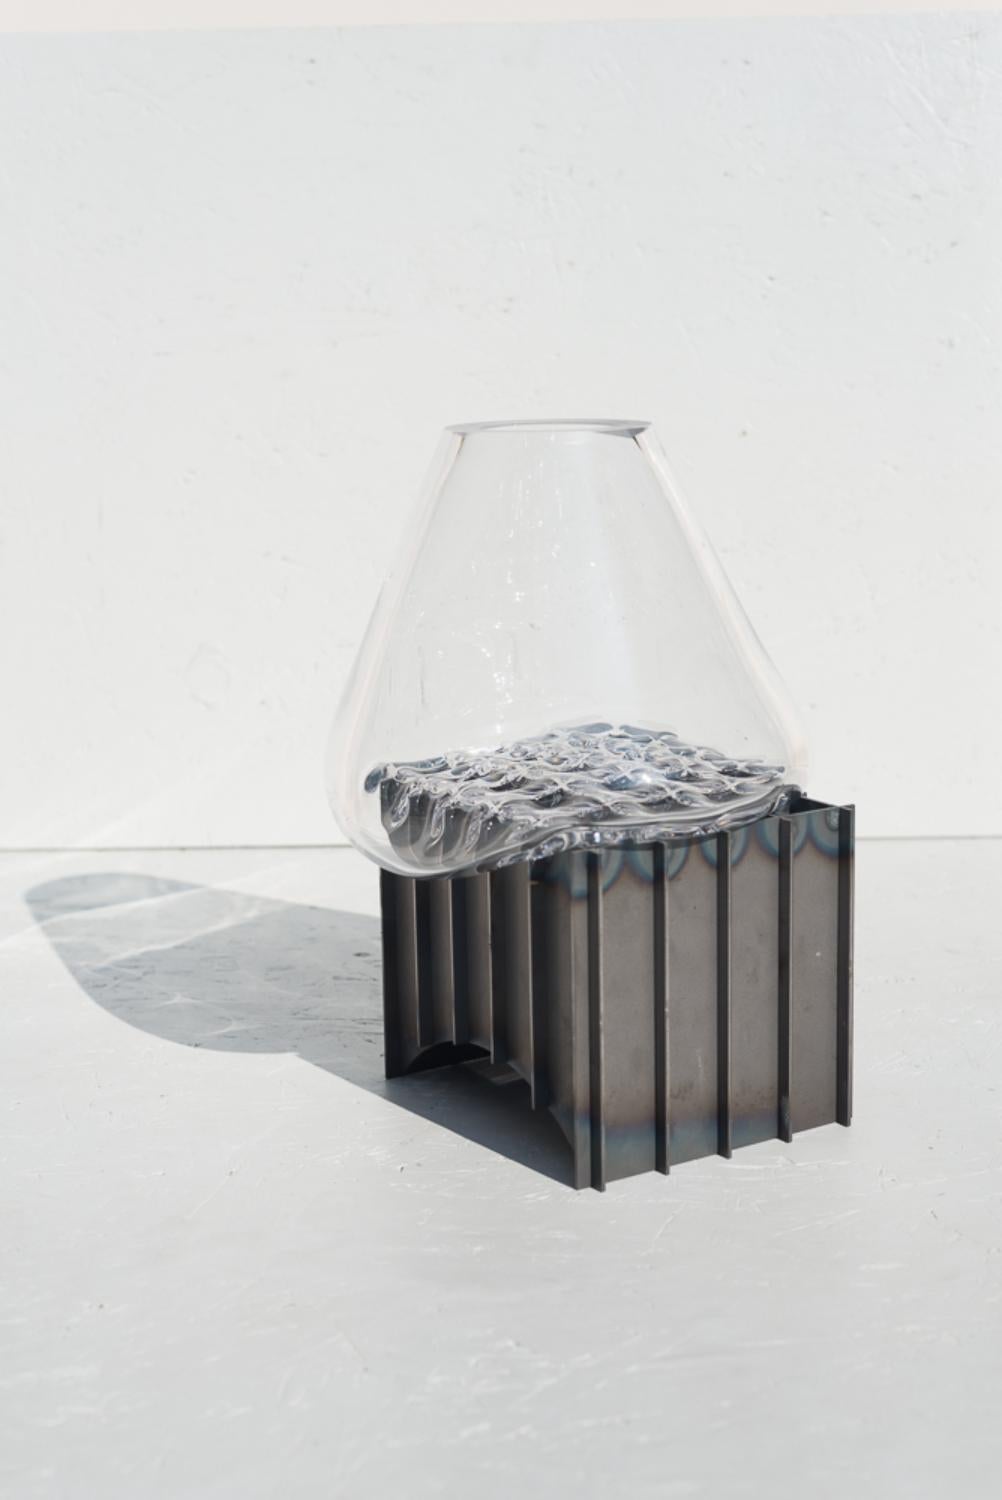 Vase de table à grille transparente par Studio Thier & van Daalen
Dimensions : L 30 x D 30 x H 35cm
MATERIAL : Steele, verre

Le Studio souhaitait trouver un moyen de mettre en valeur la fluidité du verre. C'est pourquoi ils ont cherché le contraste